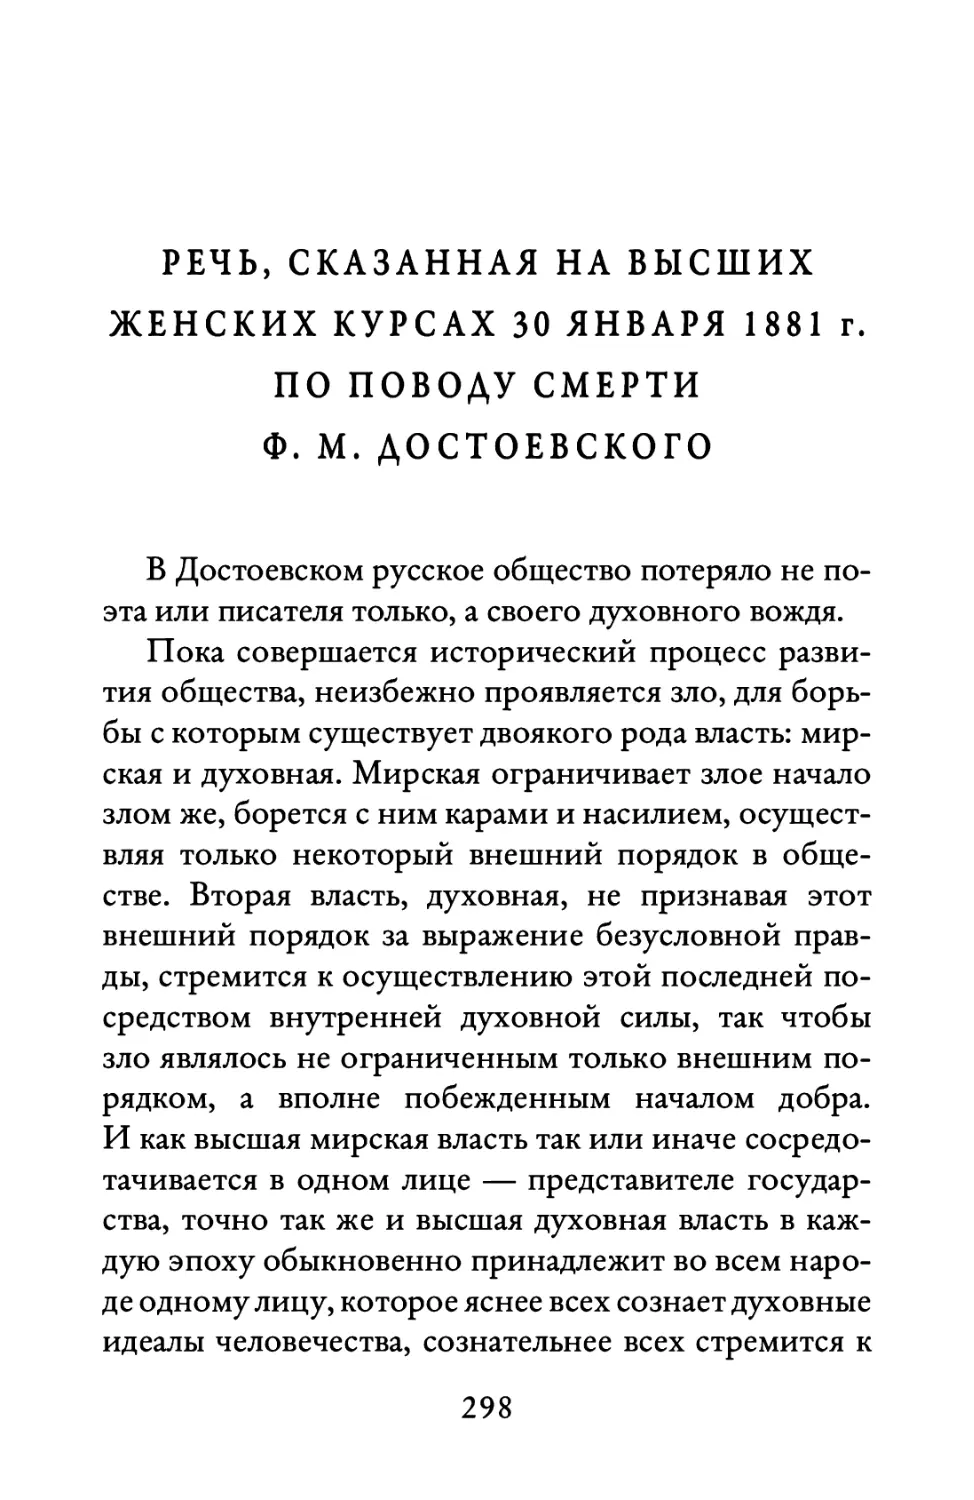 Речь, сказанная на Высших женских курсах 30 января 1881 г. по поводу смерти Ф. М. Достоевского